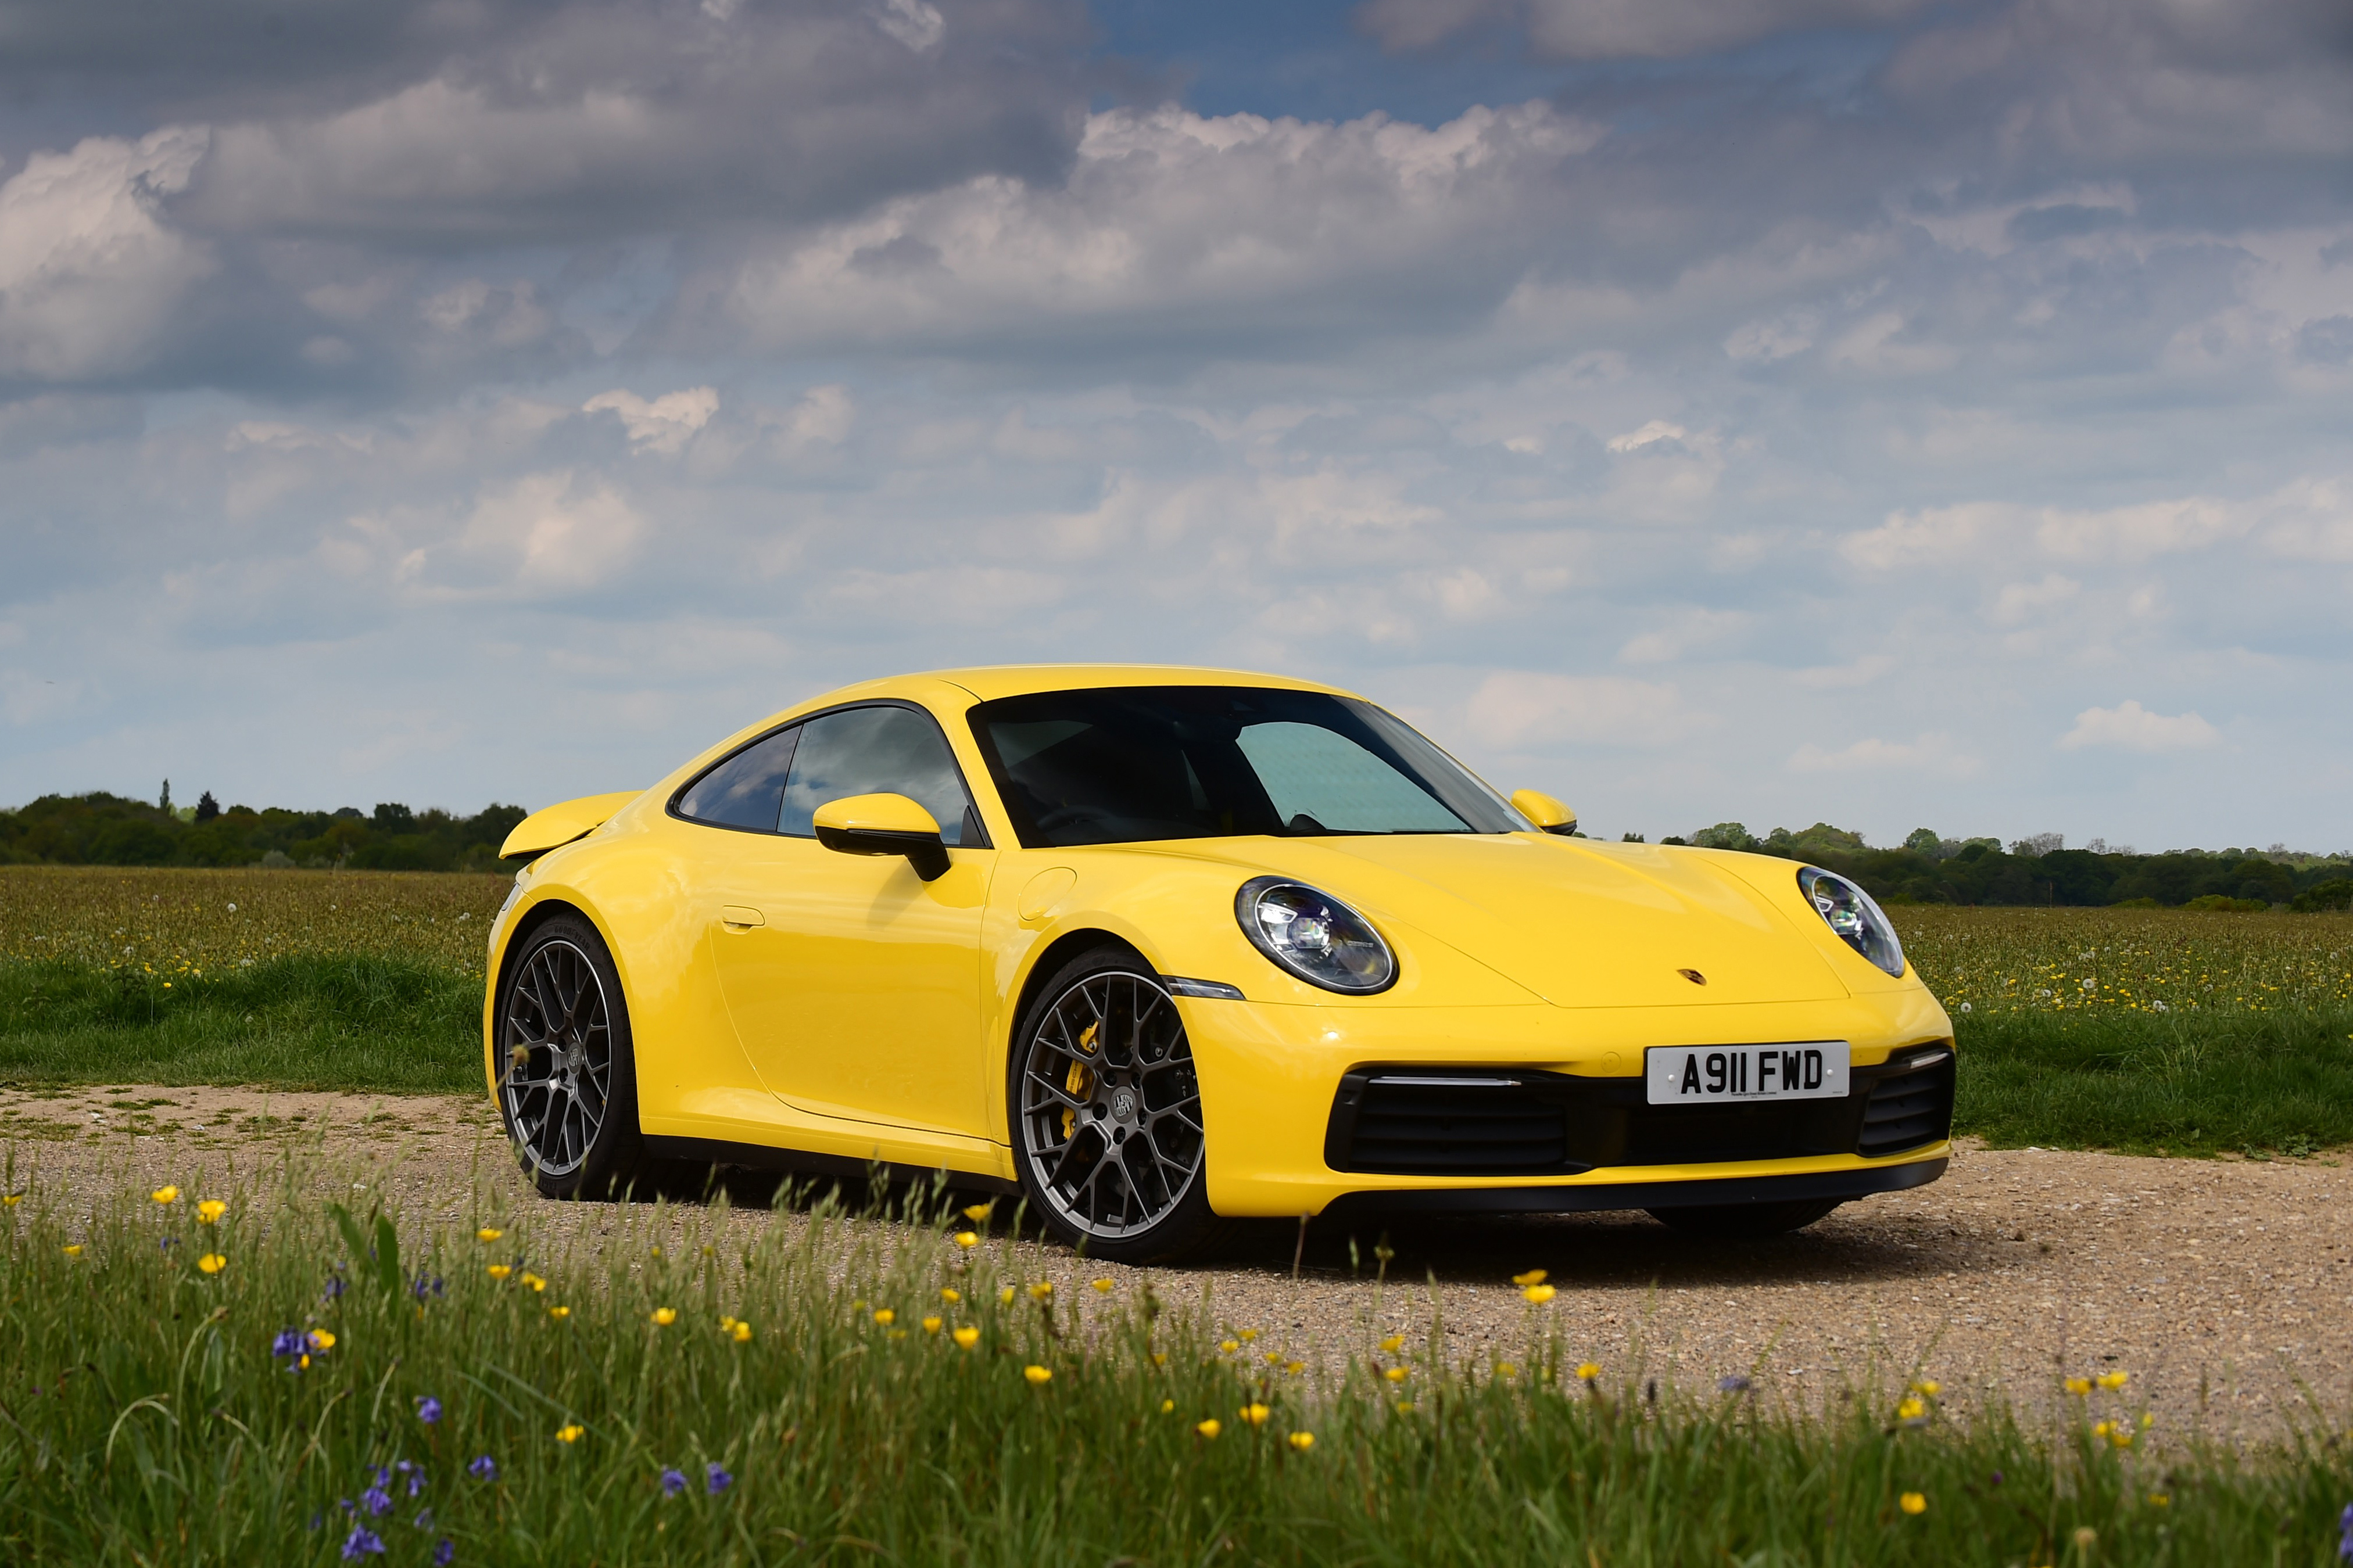 Quadro Porsche 911 Amarelo Lado -- Br Artes